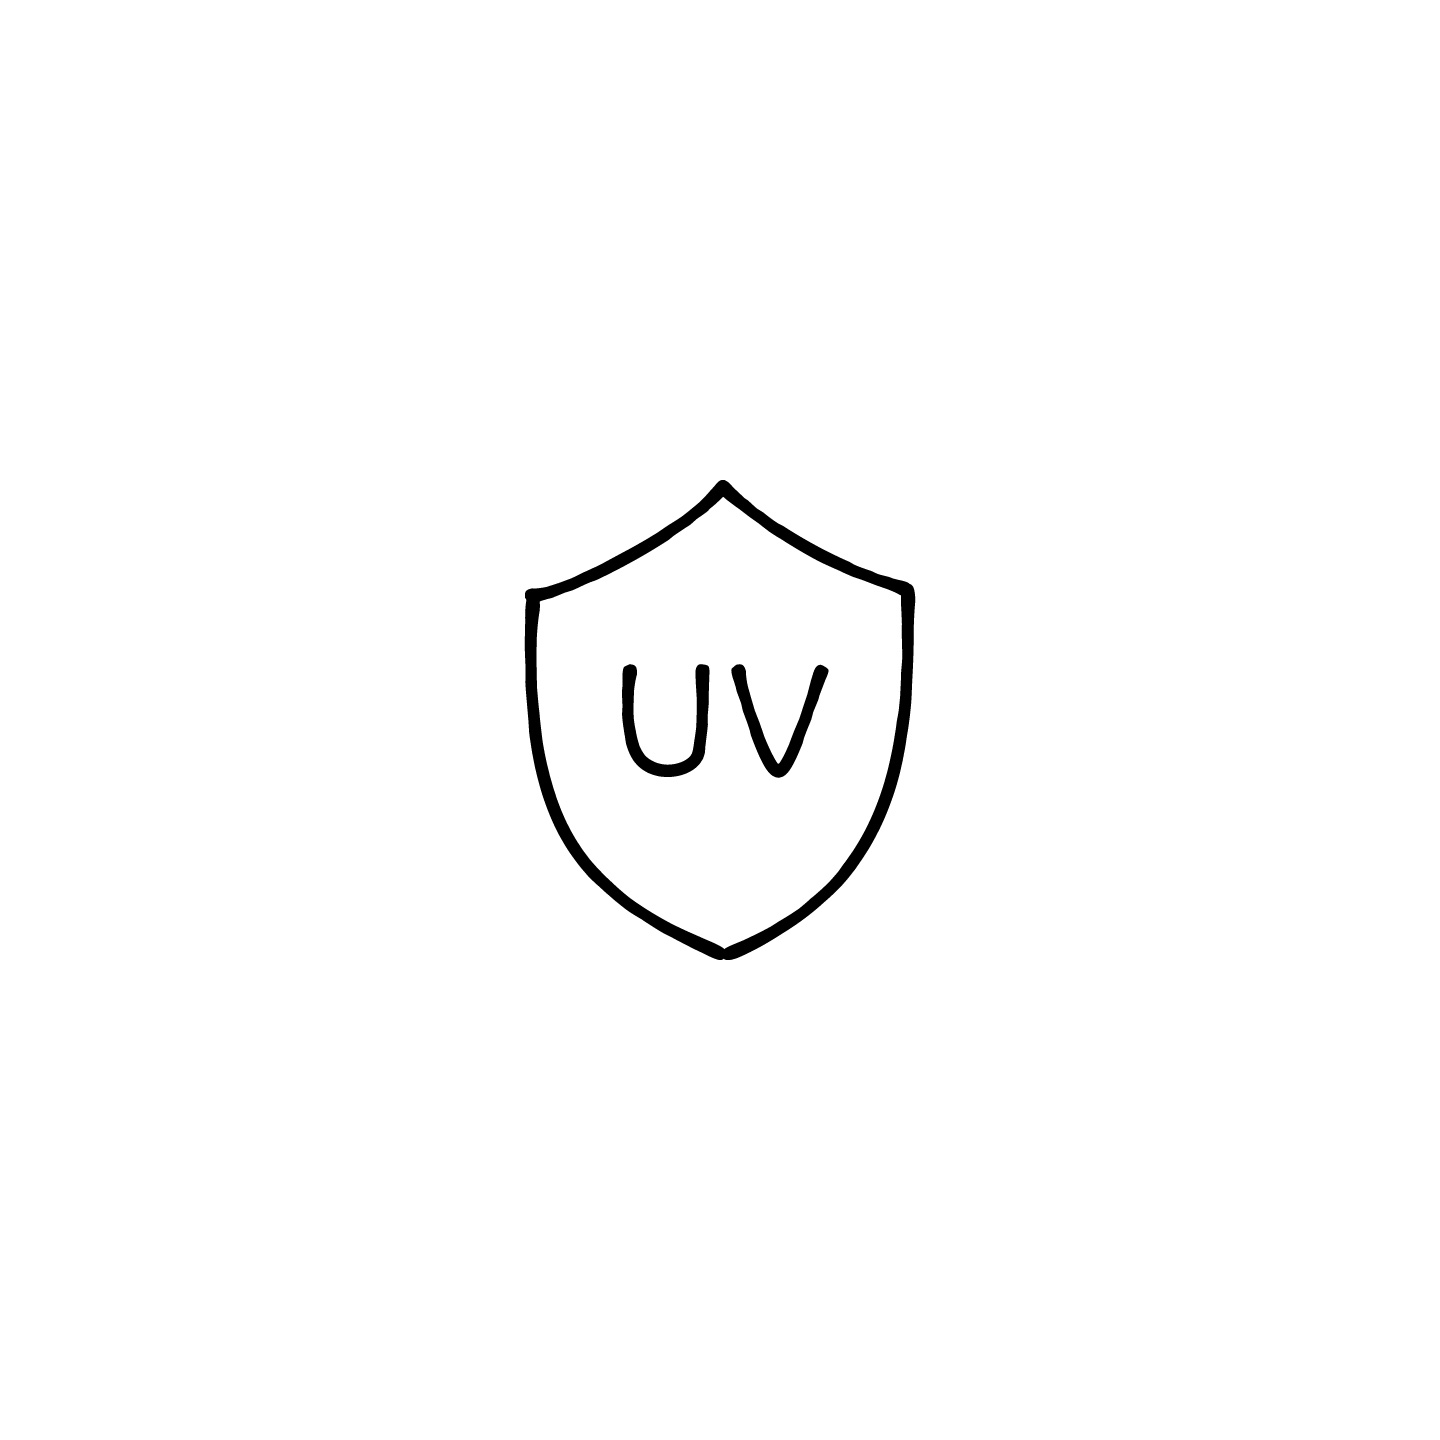 盾とUVの文字のアイコンのアイキャッチ用画像